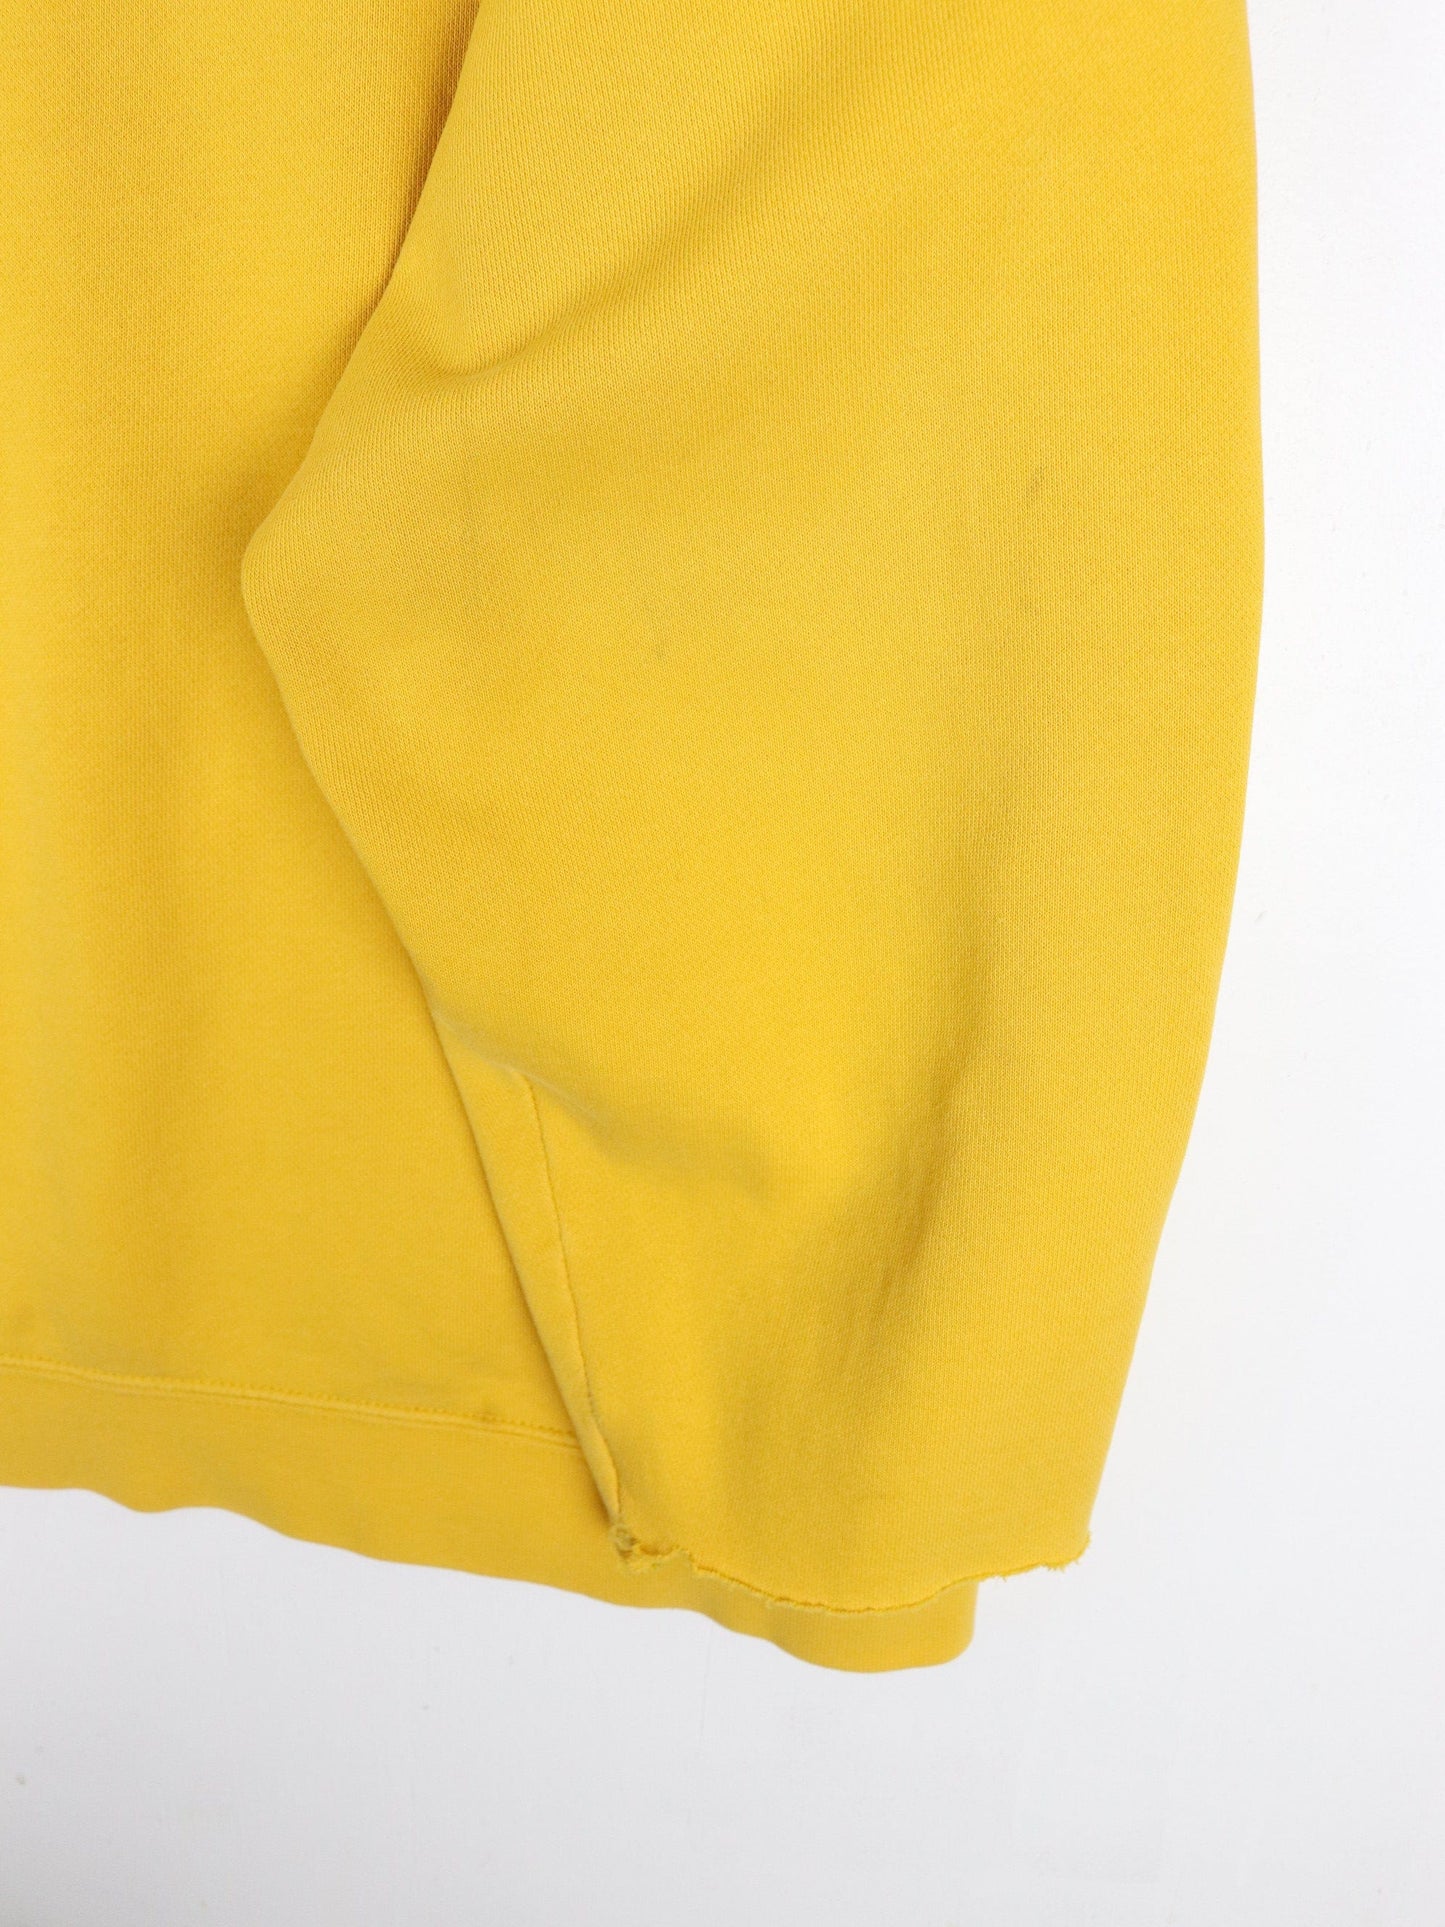 Nike Sweatshirts & Hoodies Vintage Nike Sweatshirt Mens XL Yellow Middle Swoosh Hoodie